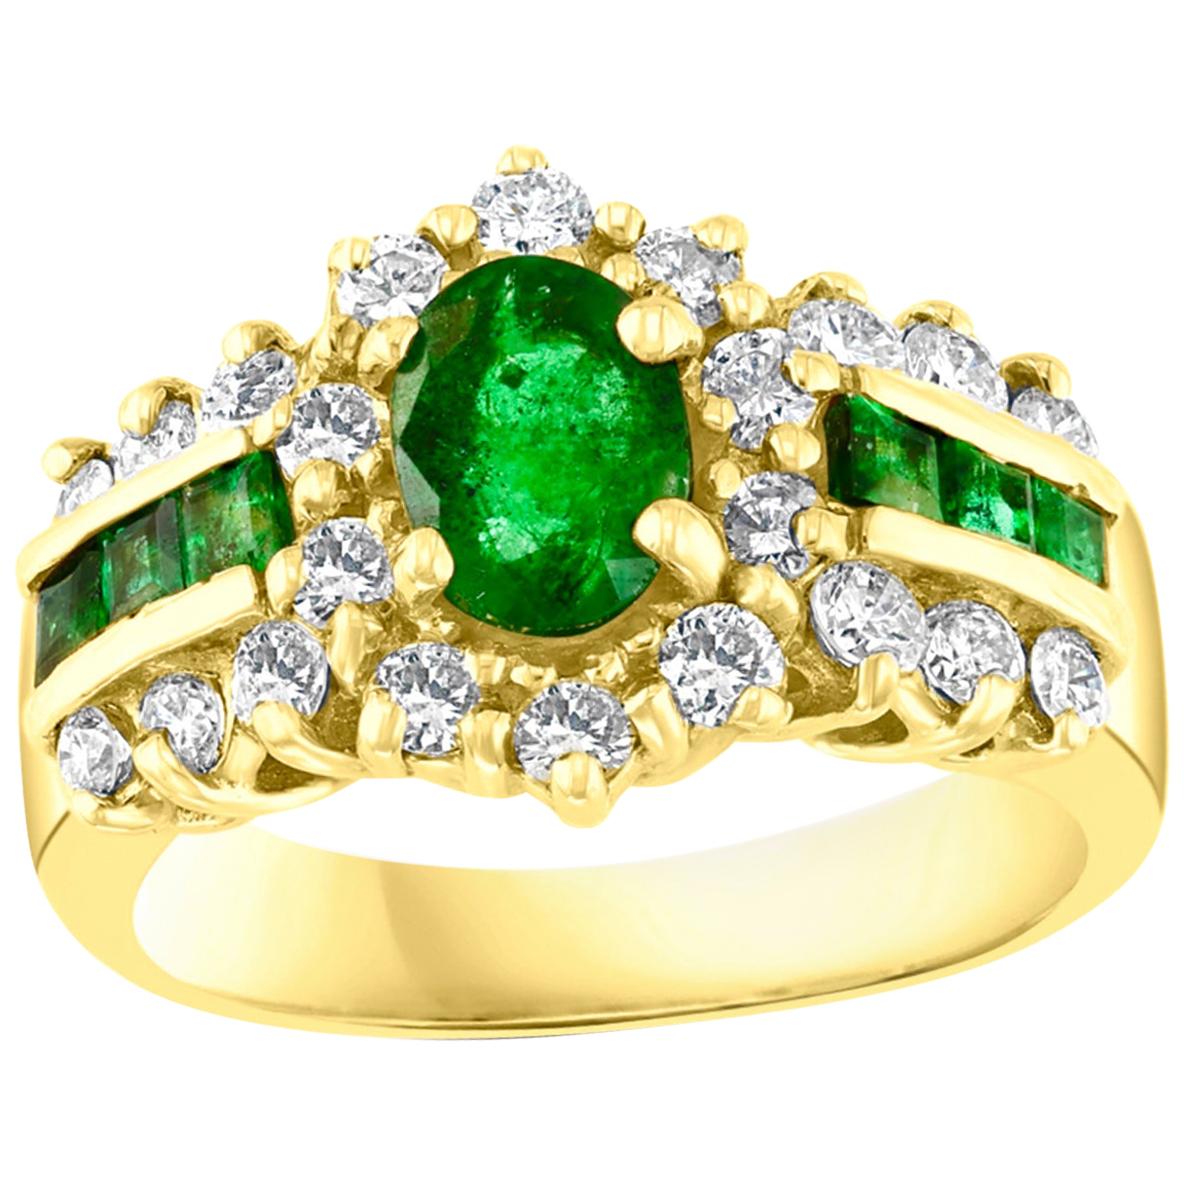 1 Carat Oval Cut Emerald and 1.0 Carat Diamond Ring 18 Karat Yellow Gold